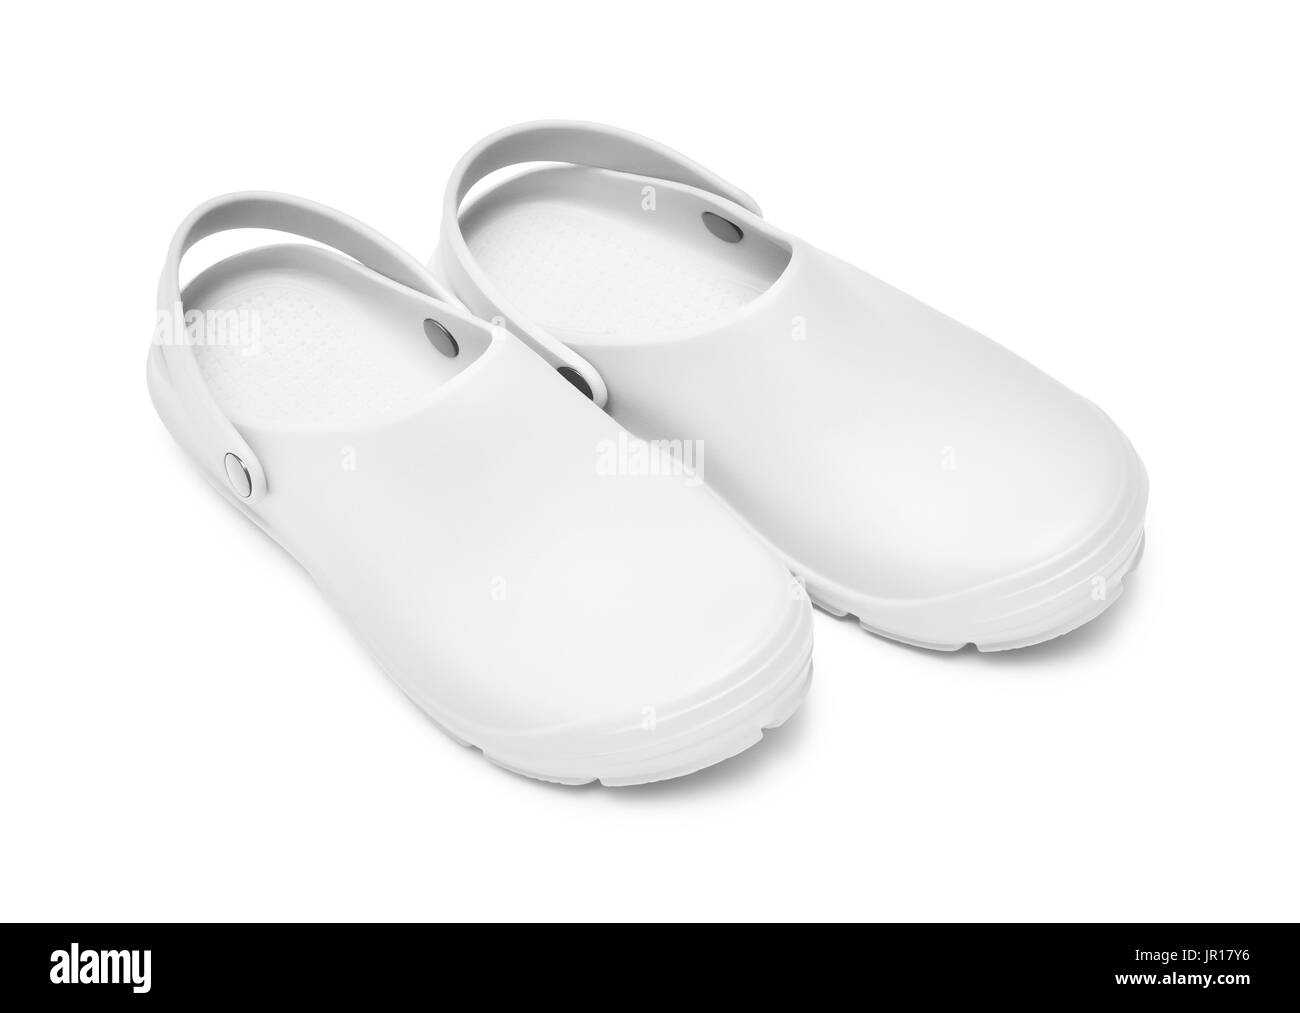 Crocs Schuhe. Ein paar weiße Clogs isoliert auf weißem Hintergrund w / Pfad  Stockfotografie - Alamy